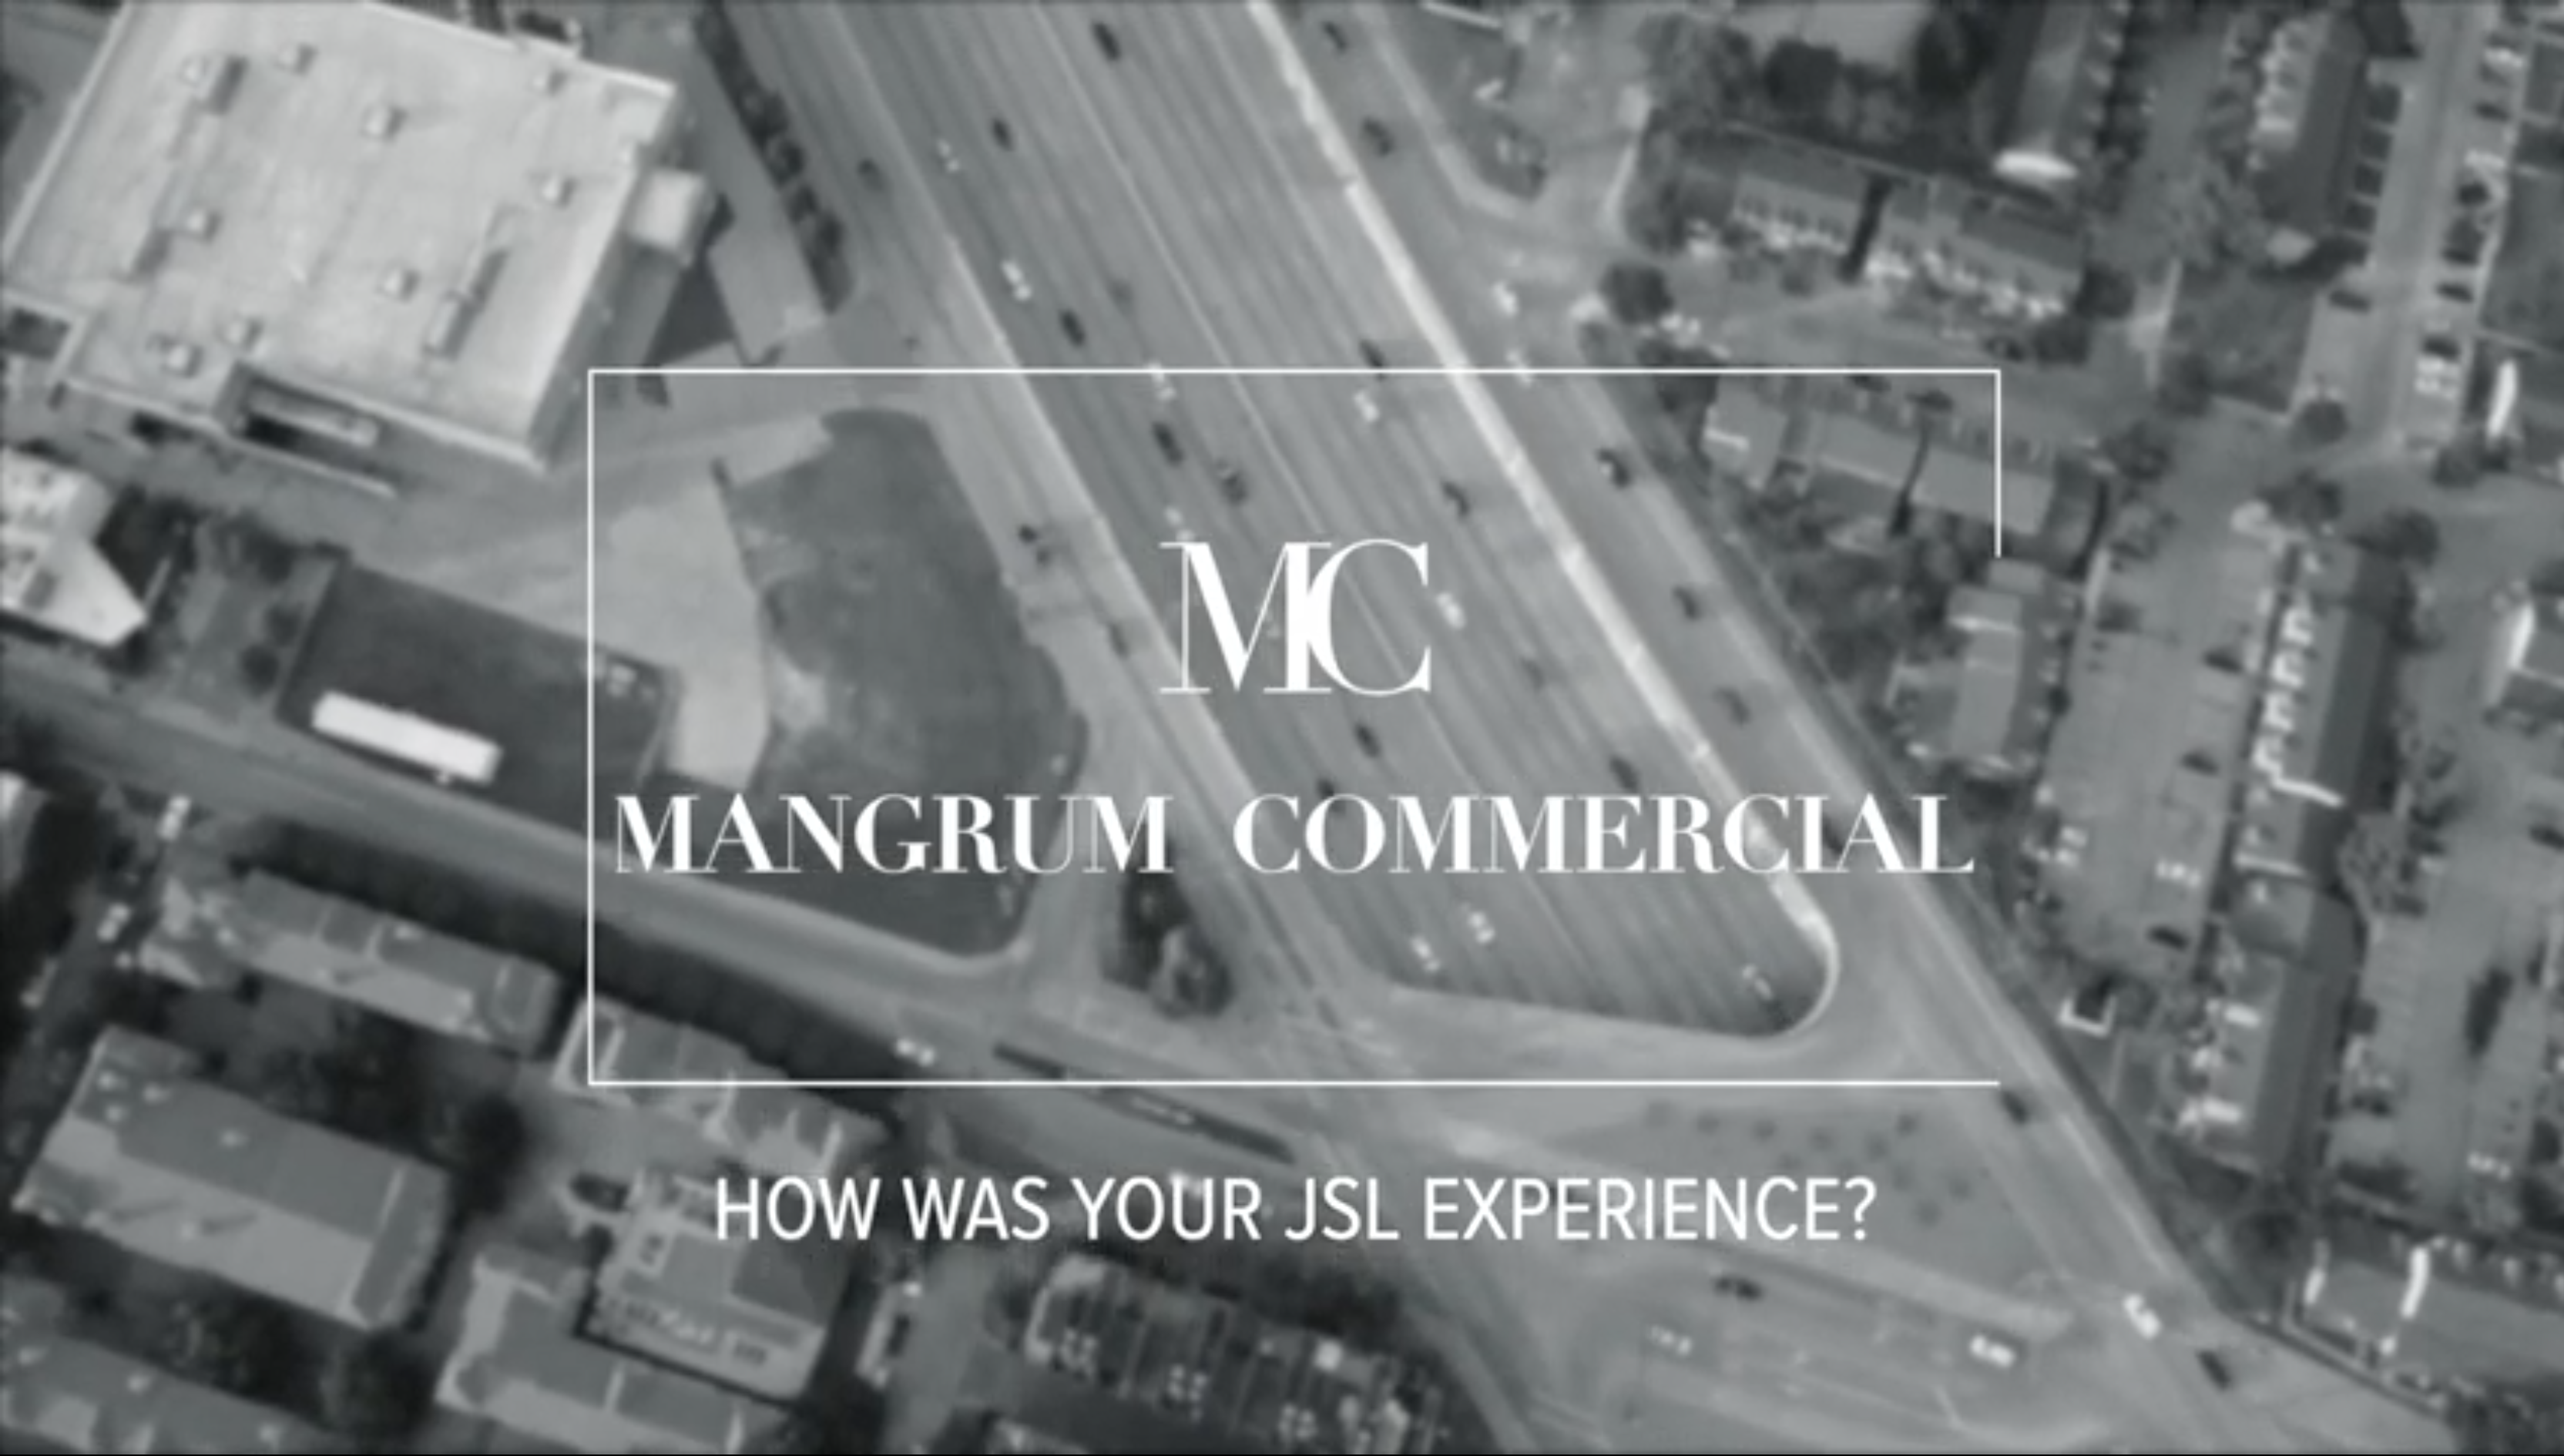 Mangrum Commercial Testimonial video